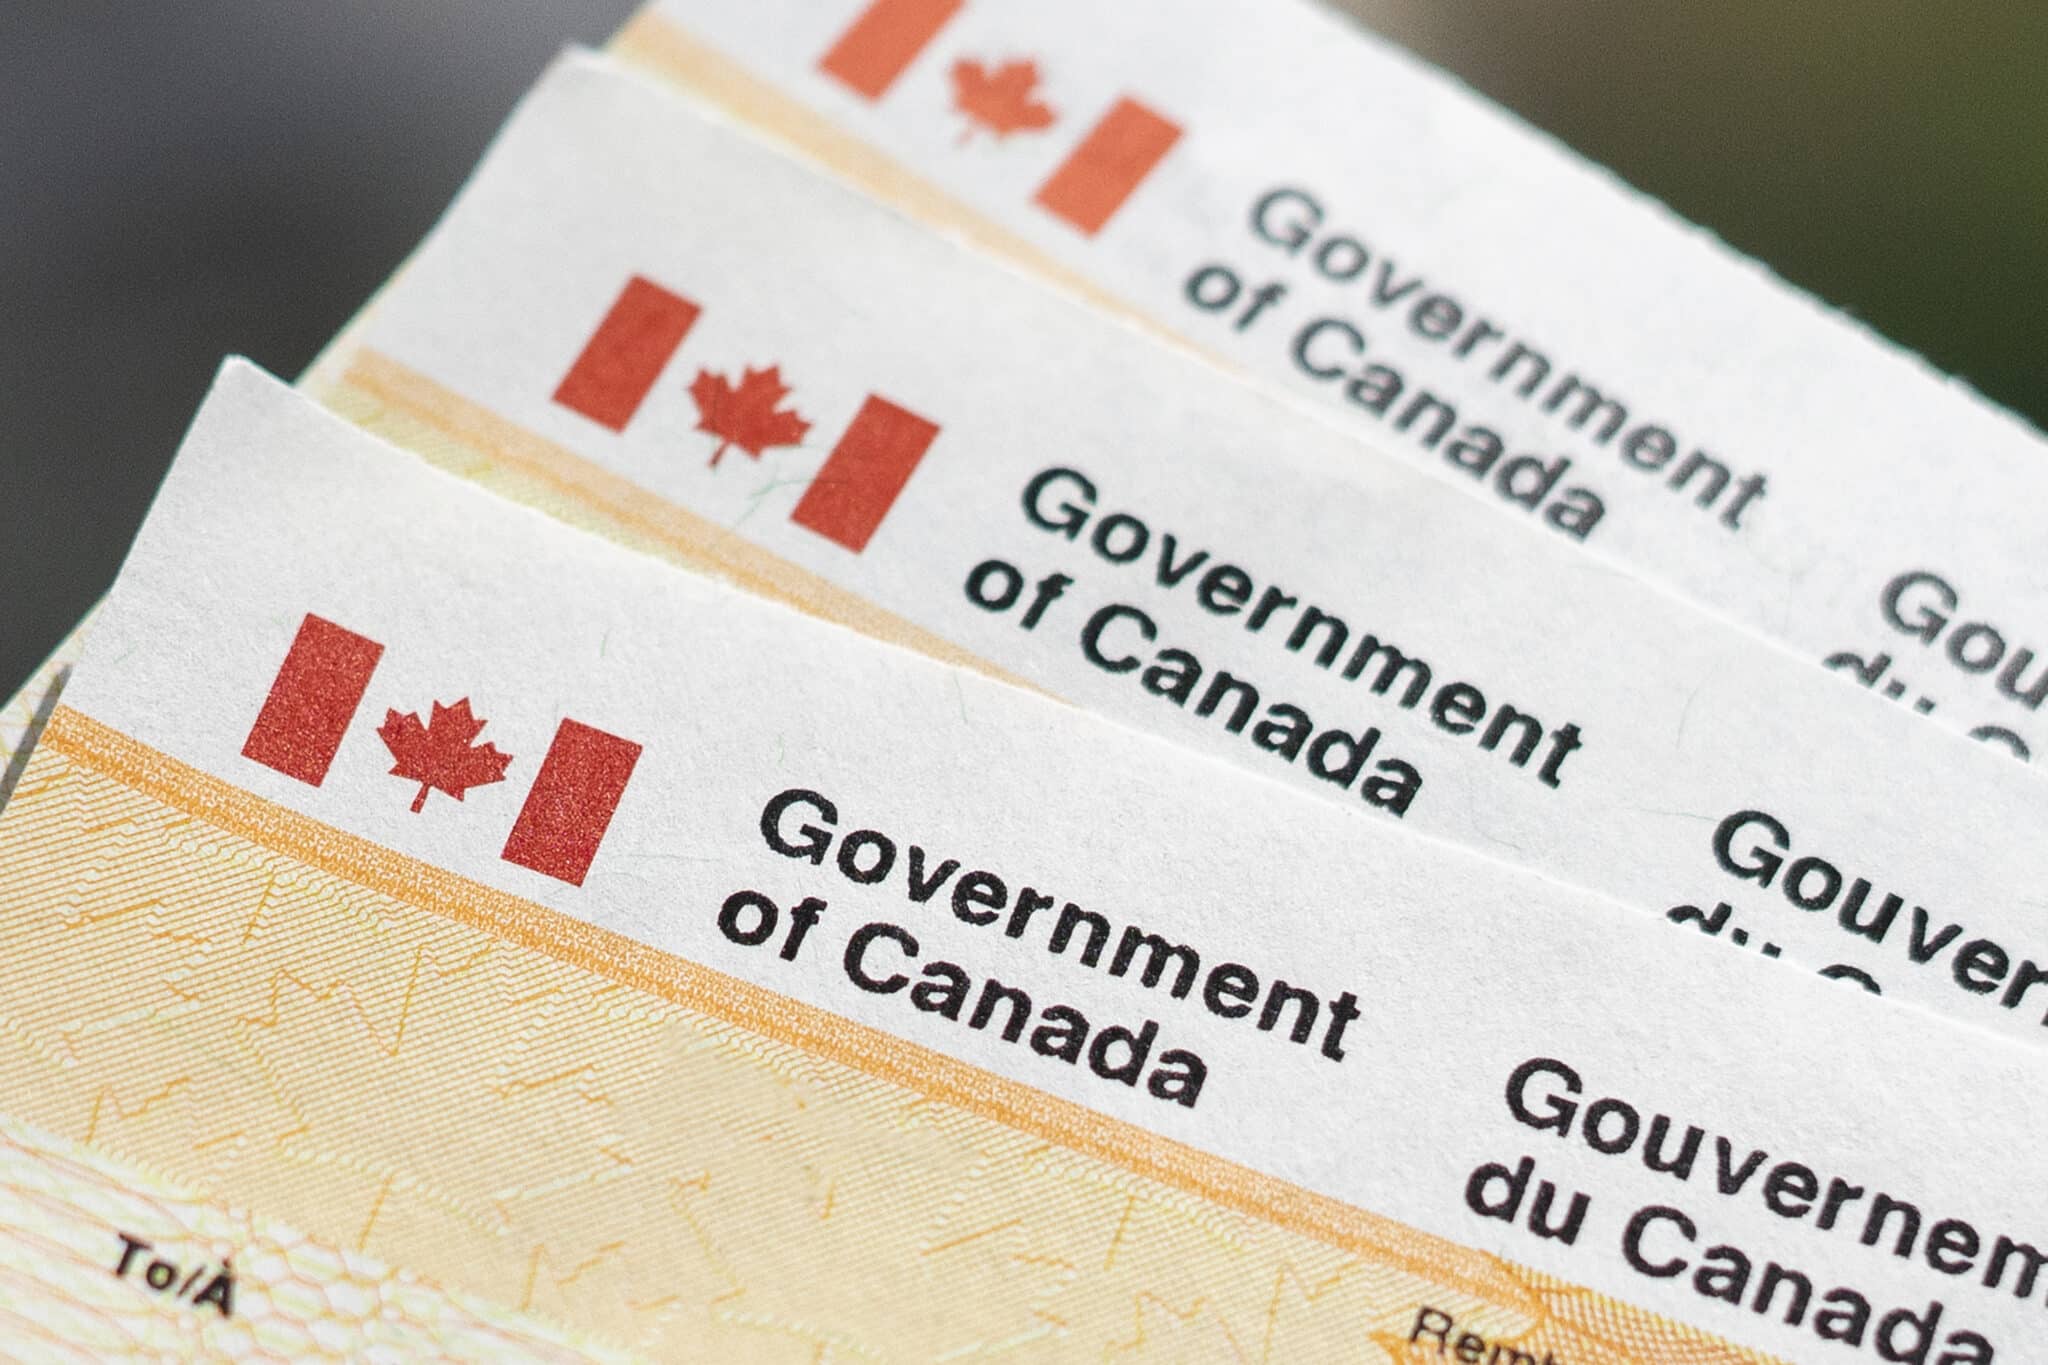 chèque de retoru de taxes du gouvernement du Canada